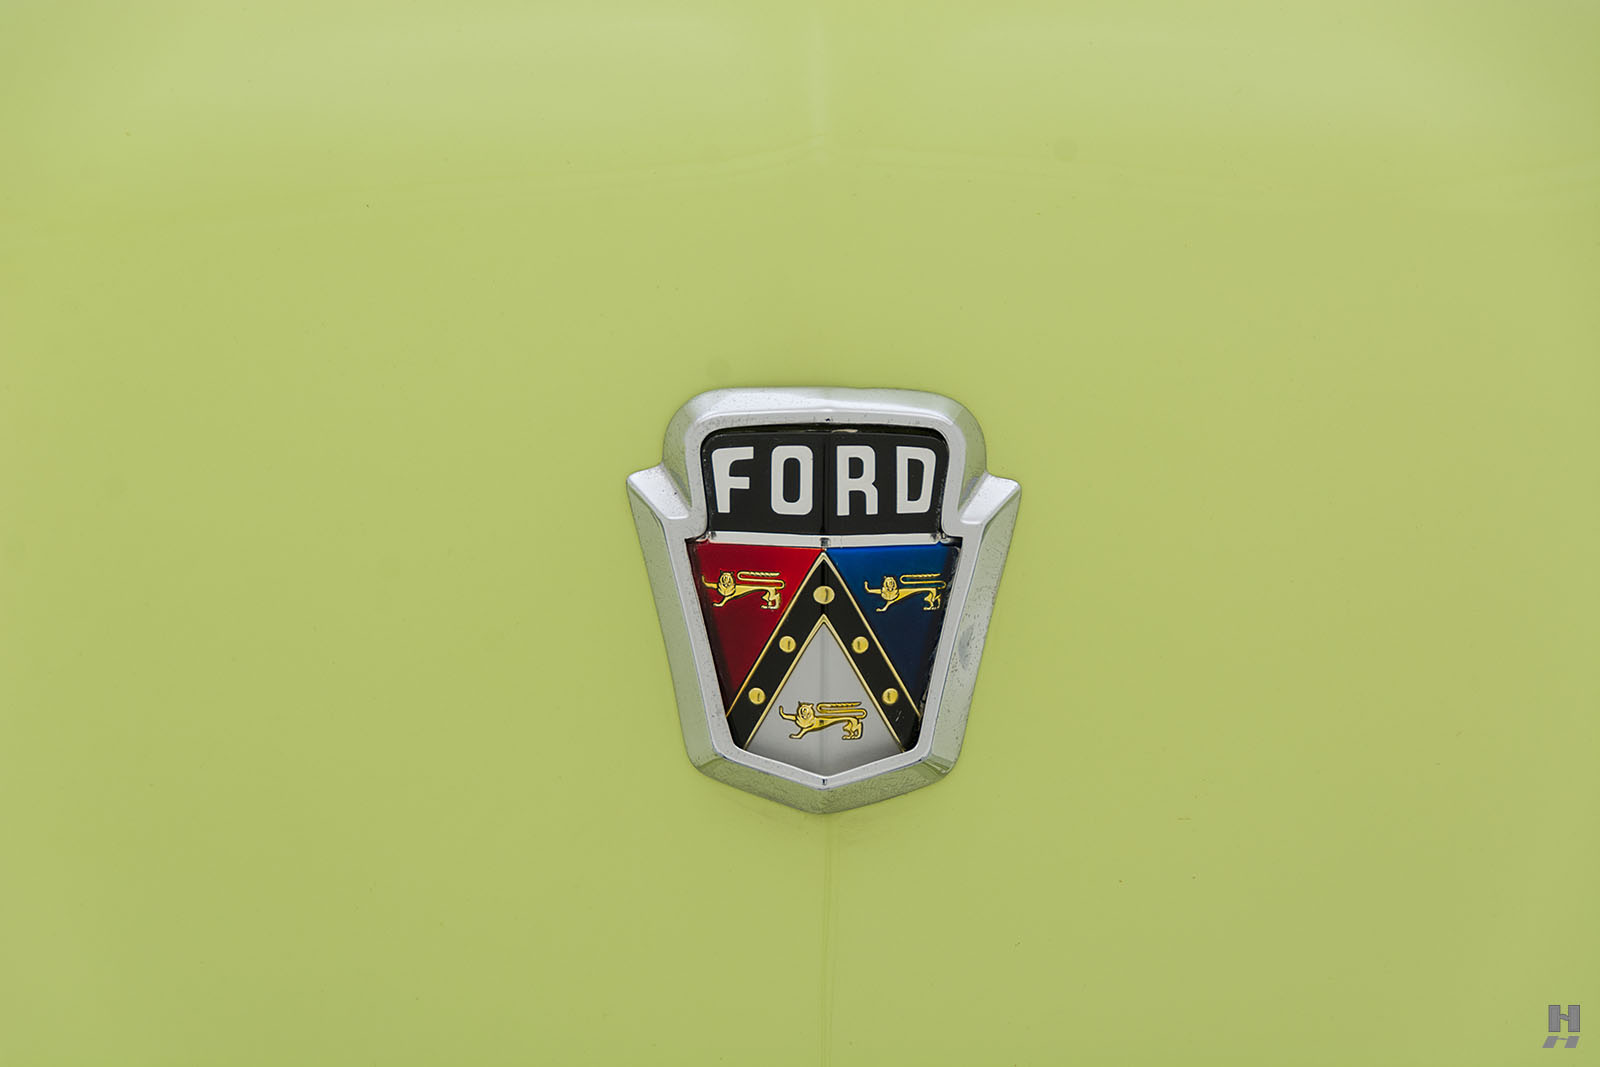 1951 ford custom deluxe crestliner